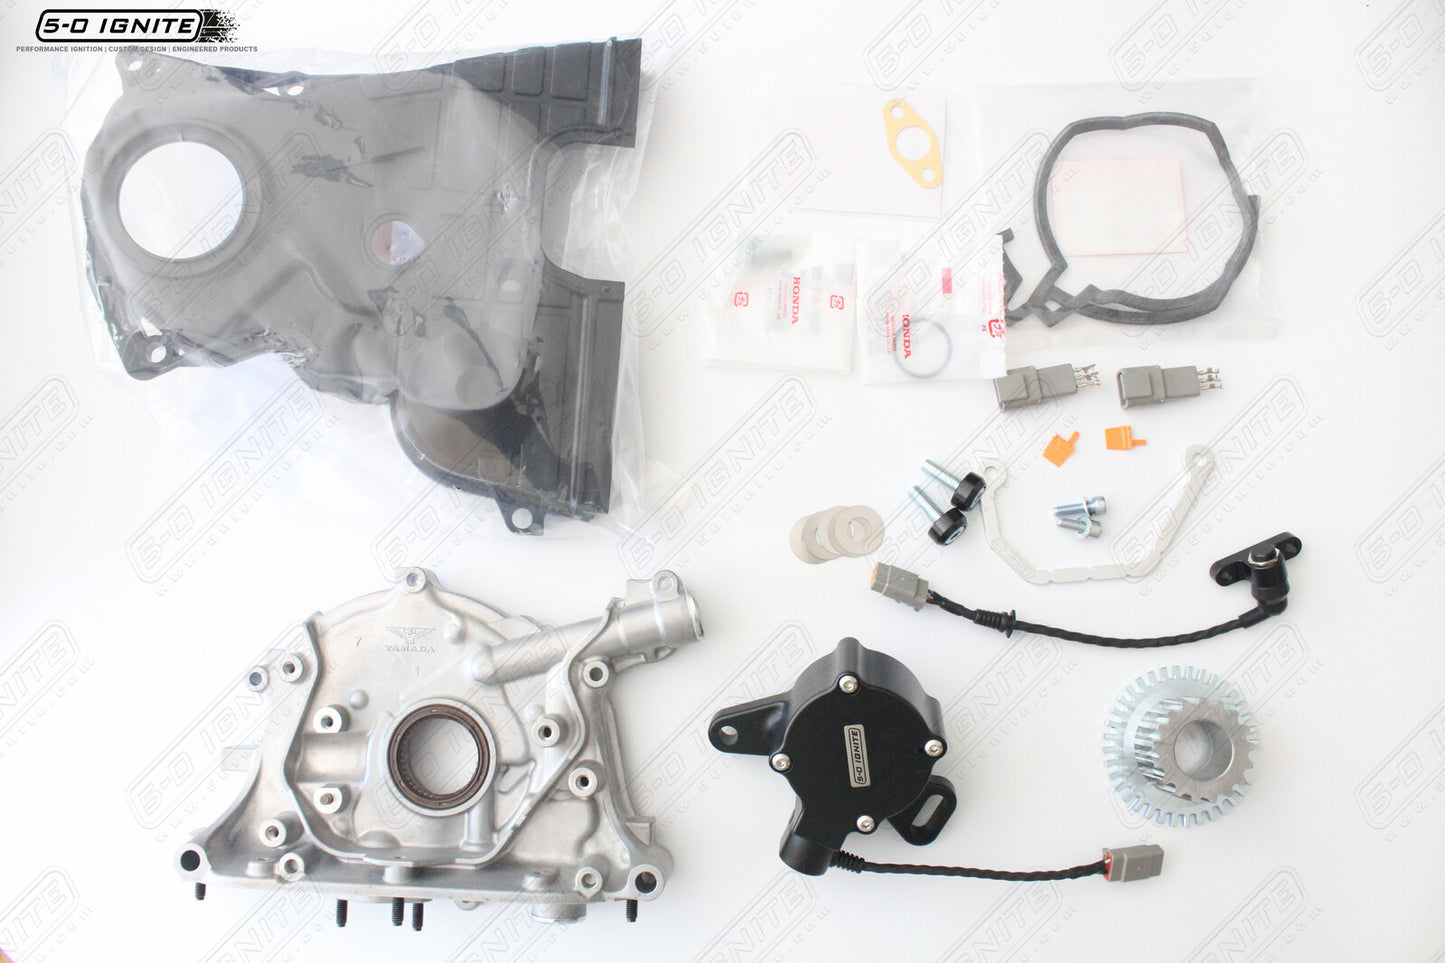 Honda B Series Pro Crank Trigger Kit